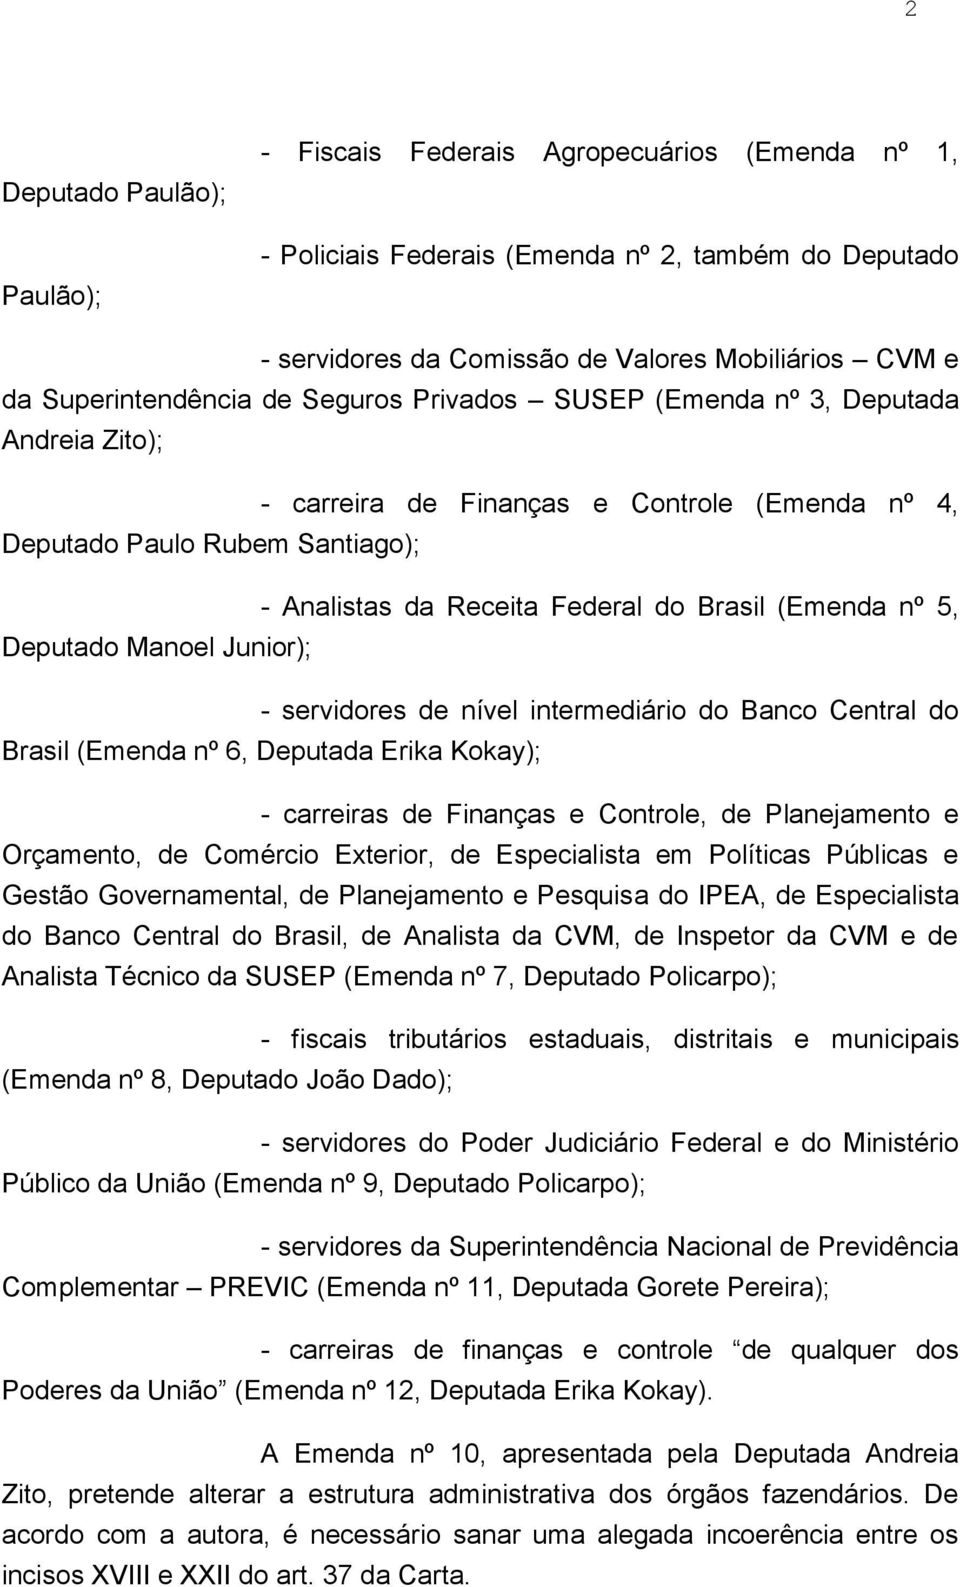 Brasil (Emenda nº 5, Deputado Manoel Junior); - servidores de nível intermediário do Banco Central do Brasil (Emenda nº 6, Deputada Erika Kokay); - carreiras de Finanças e Controle, de Planejamento e